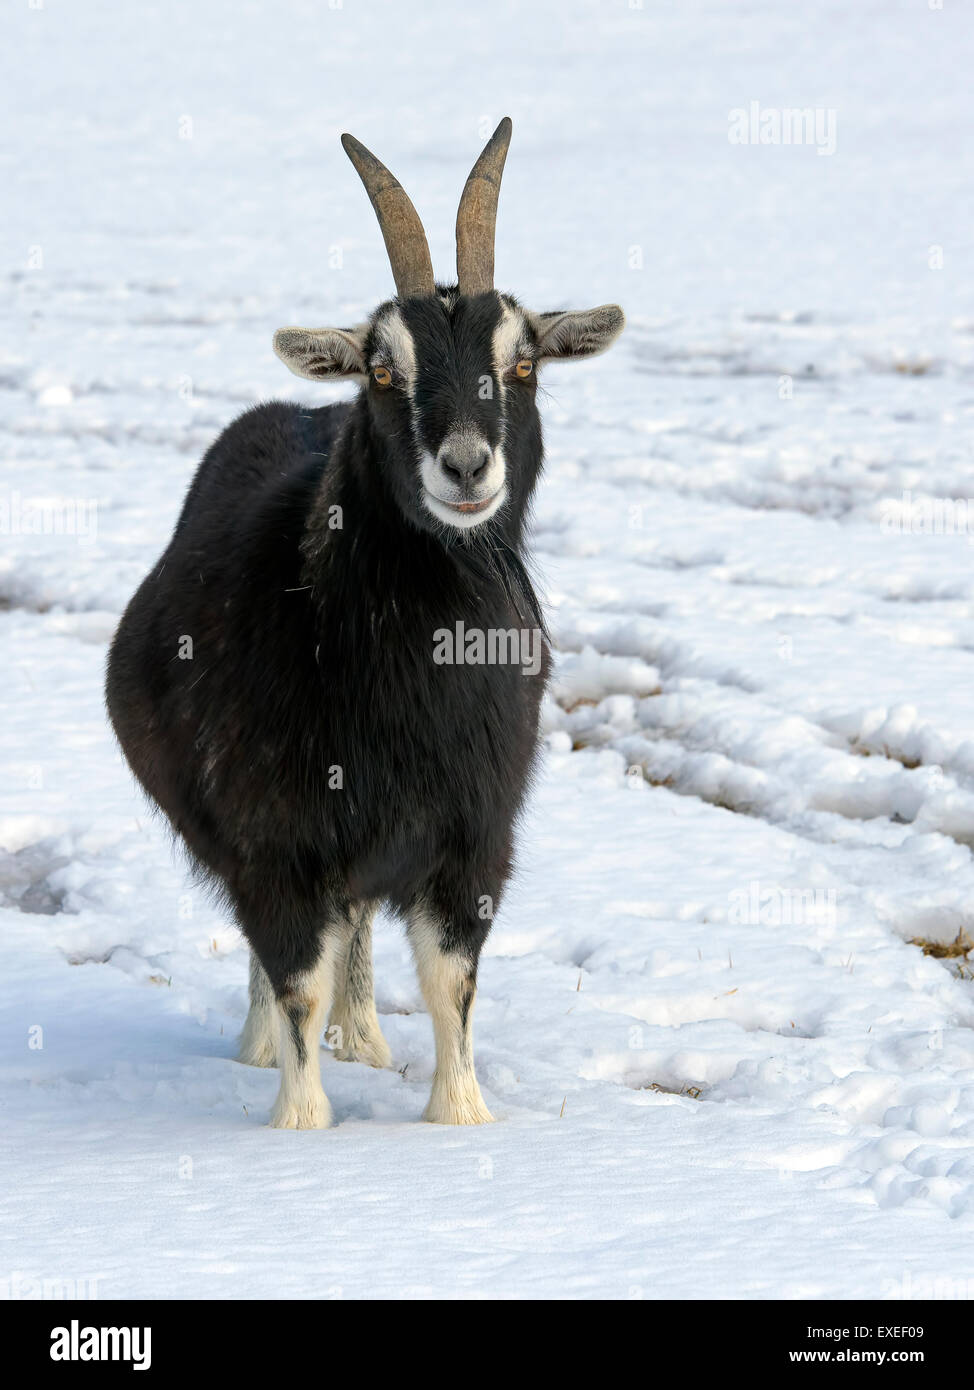 Una cabra negra de pie en la nieve. Foto de stock